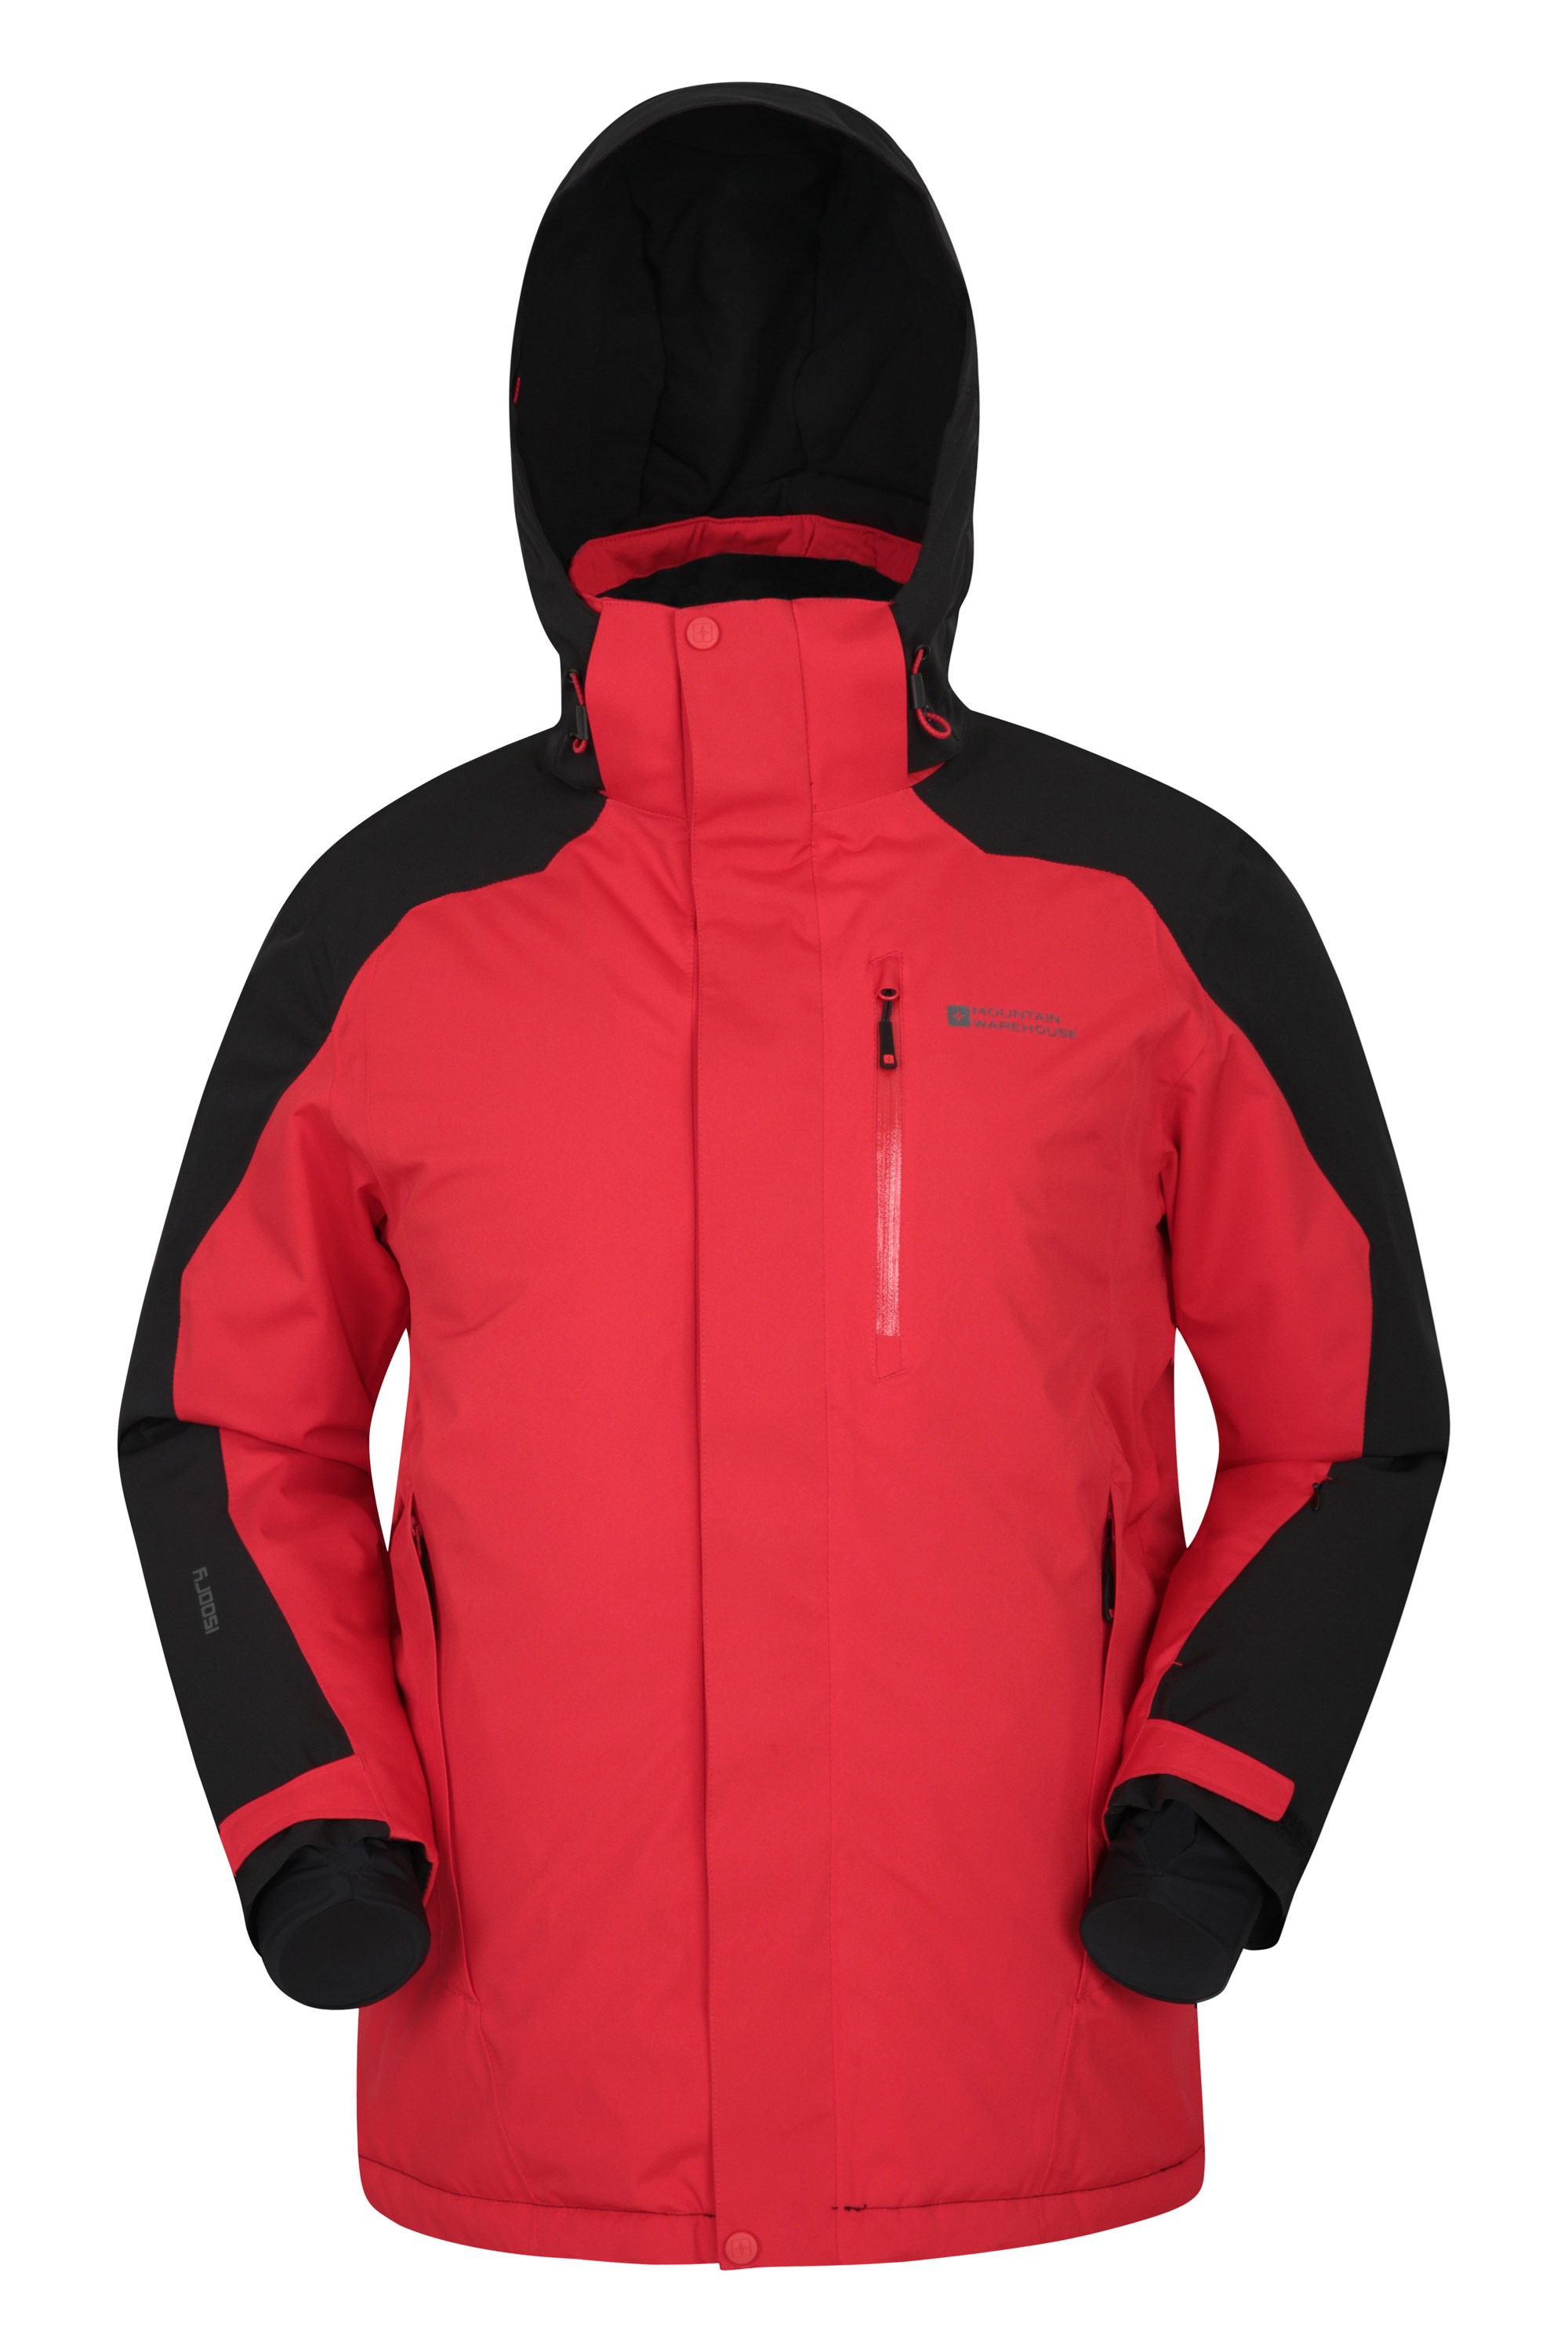 Mountain Warehouse Mountain Extreme Mens Ski Jacket Red